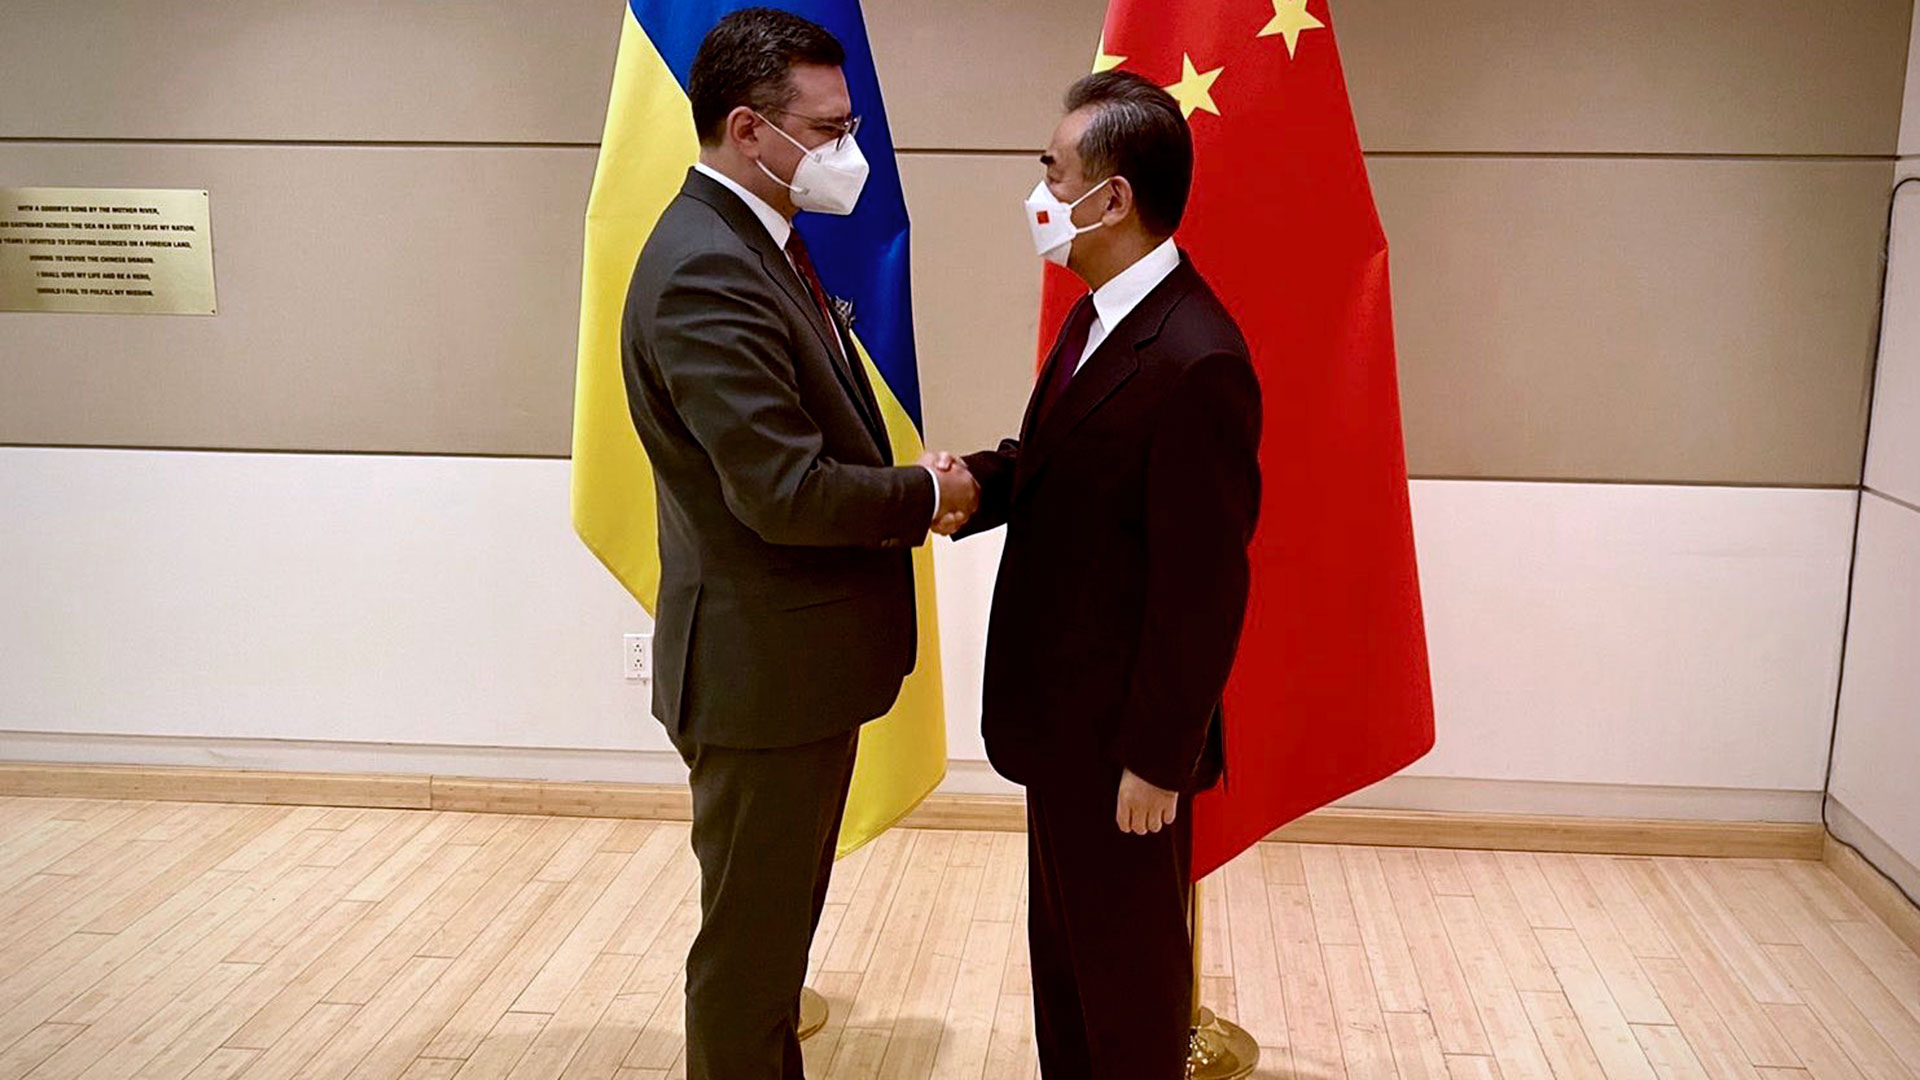 El Ministro de Asuntos Exteriores de Ucrania, Dmytro Kuleba, con el Consejero de Estado y Ministro de Asuntos Exteriores de China, Wang Yi, en un encuentro en Nueva York al margen de la 77ª sesión de la Asamblea General de la ONU (Twitter @DmytroKuleba)